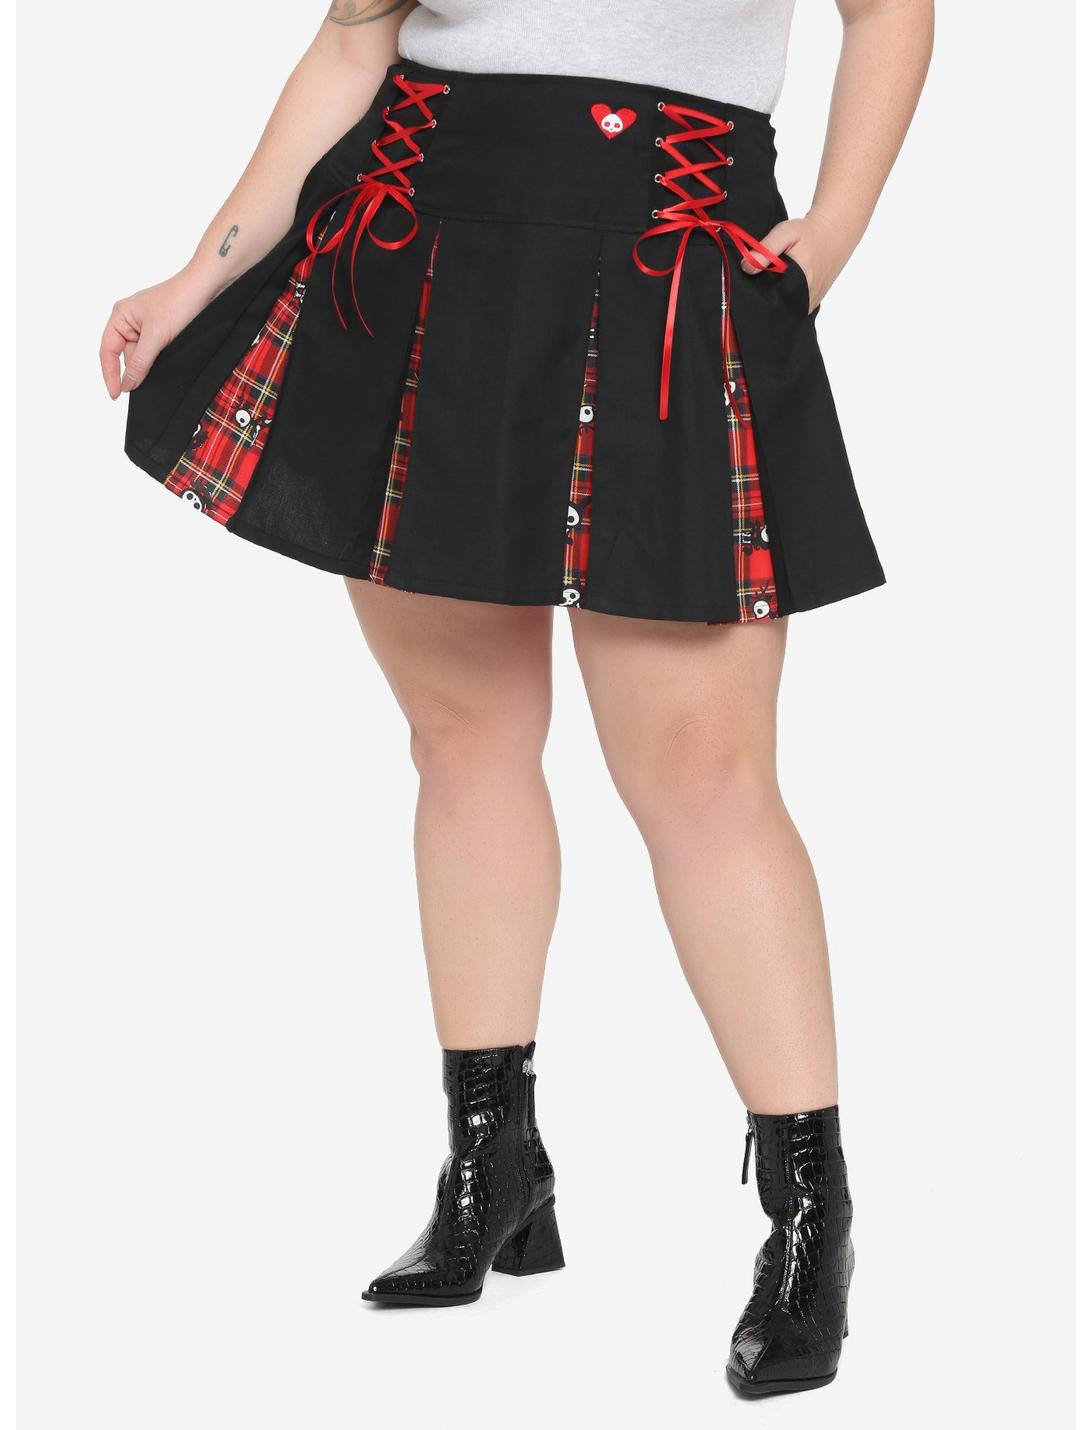 Skelanimals Plaid Contrast Pleated Skirt Plus Size, MULTI, hi-res